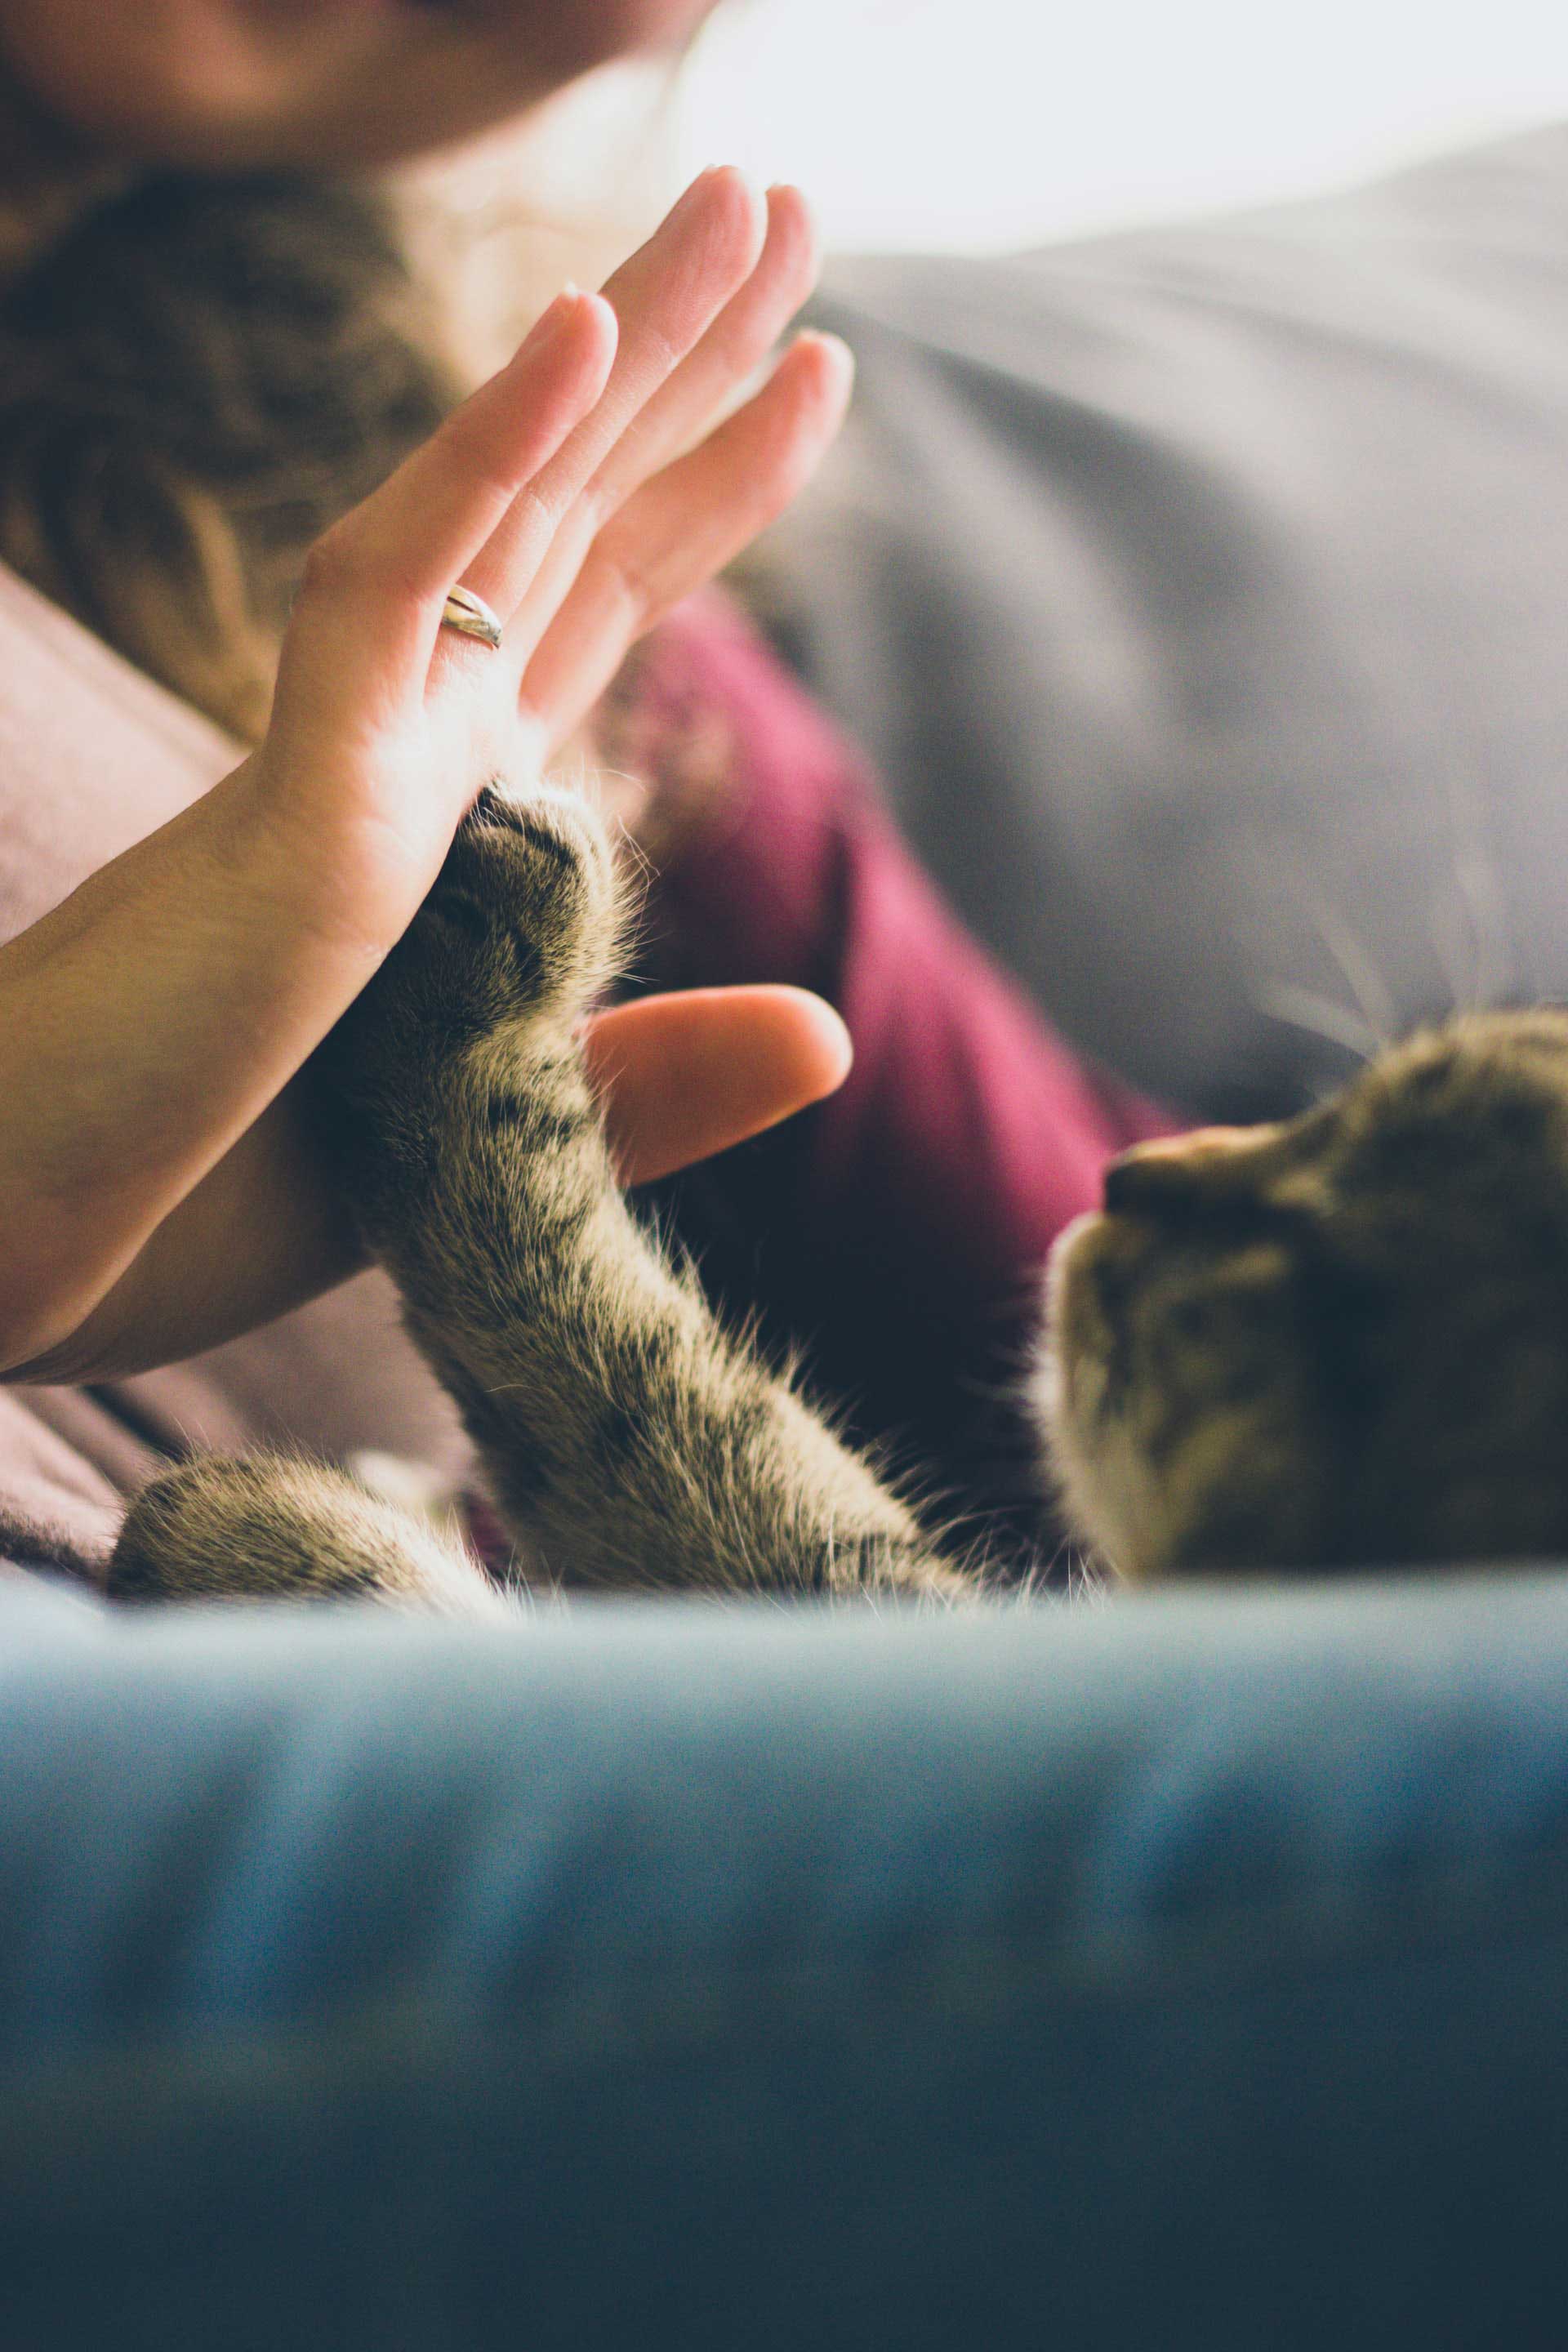 Touching cat's hand